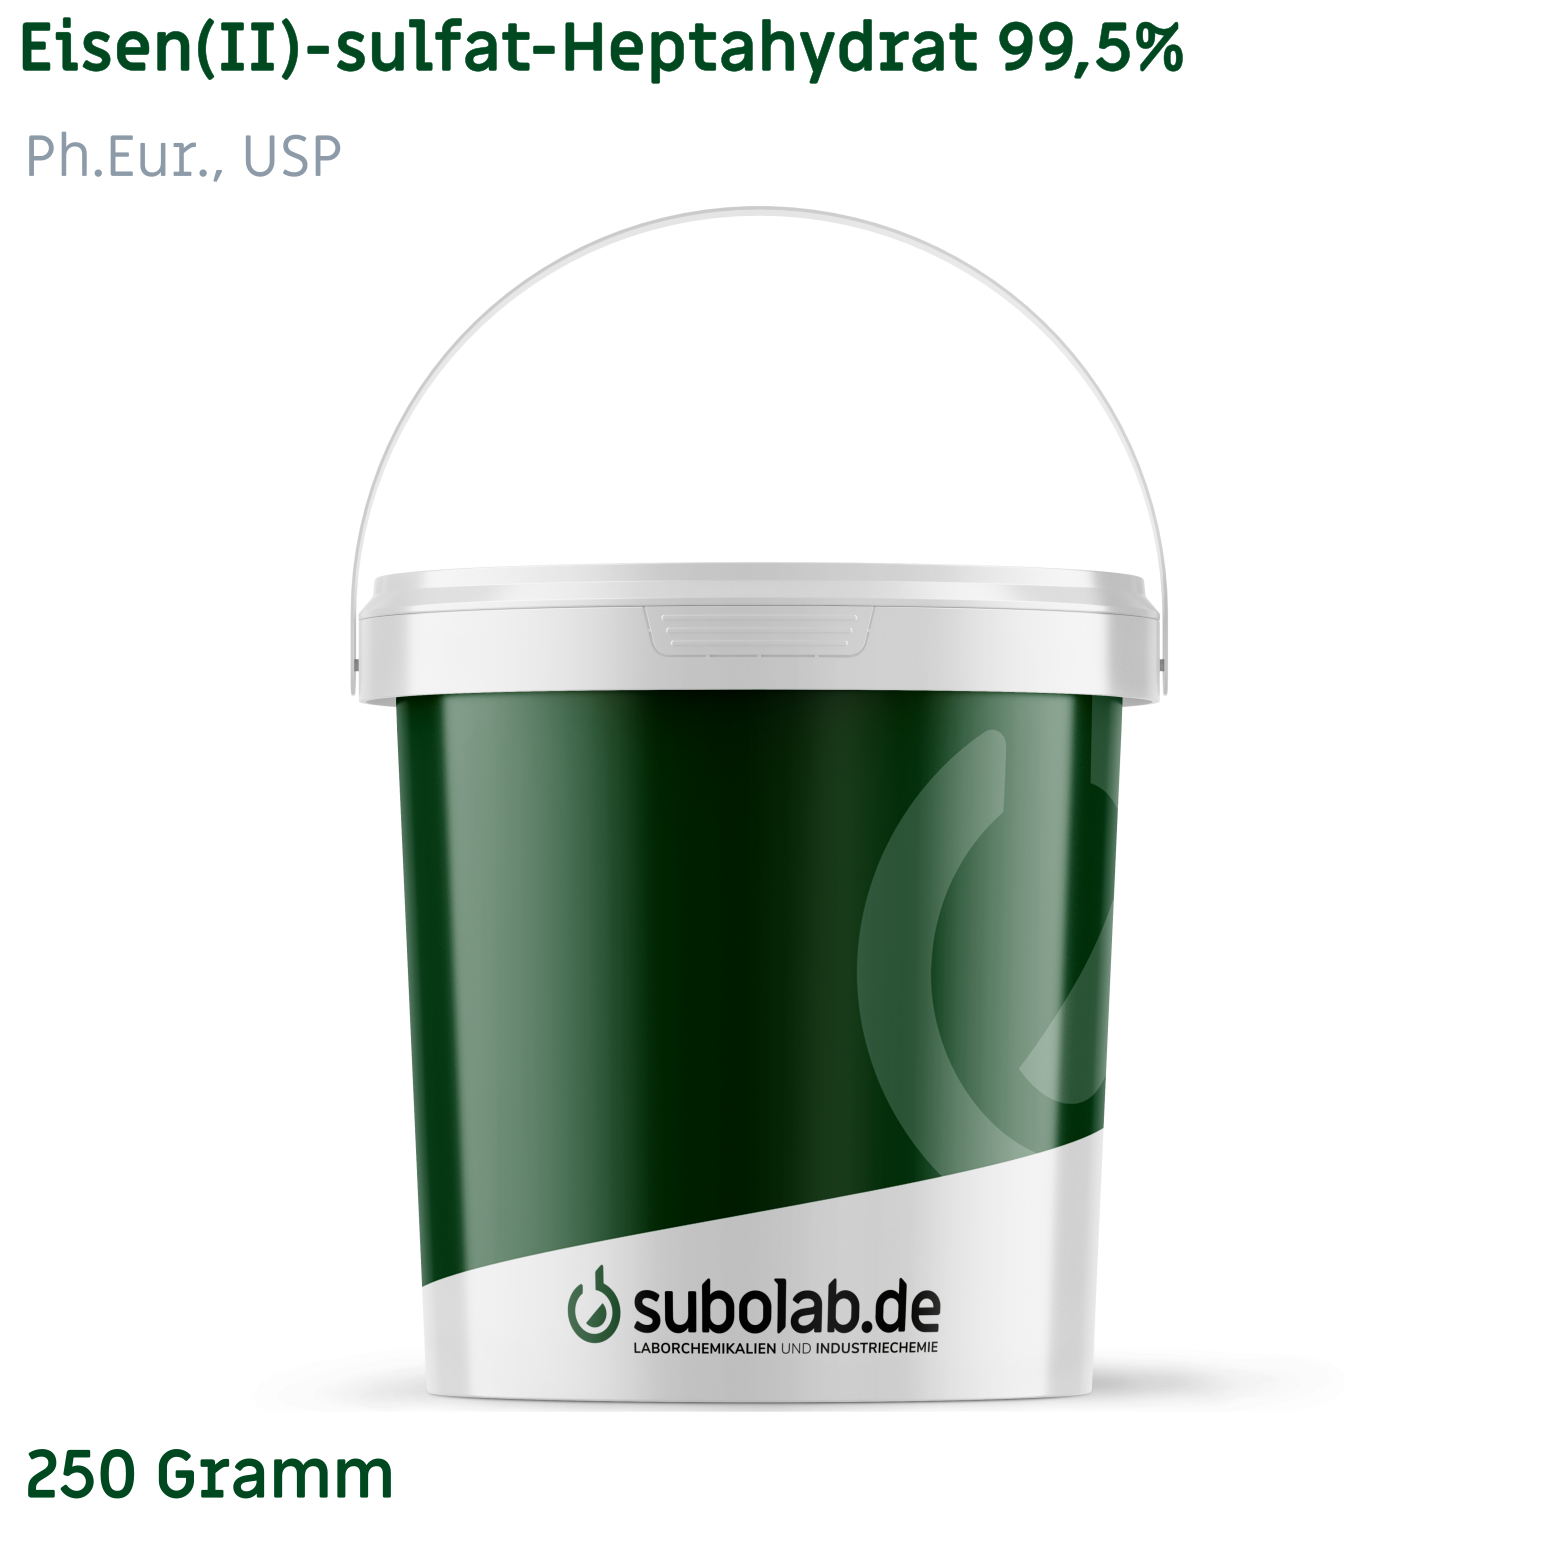 Bild von Eisen(II)-sulfat - Heptahydrat 99,5%, Ph.Eur., USP (250 Gramm)